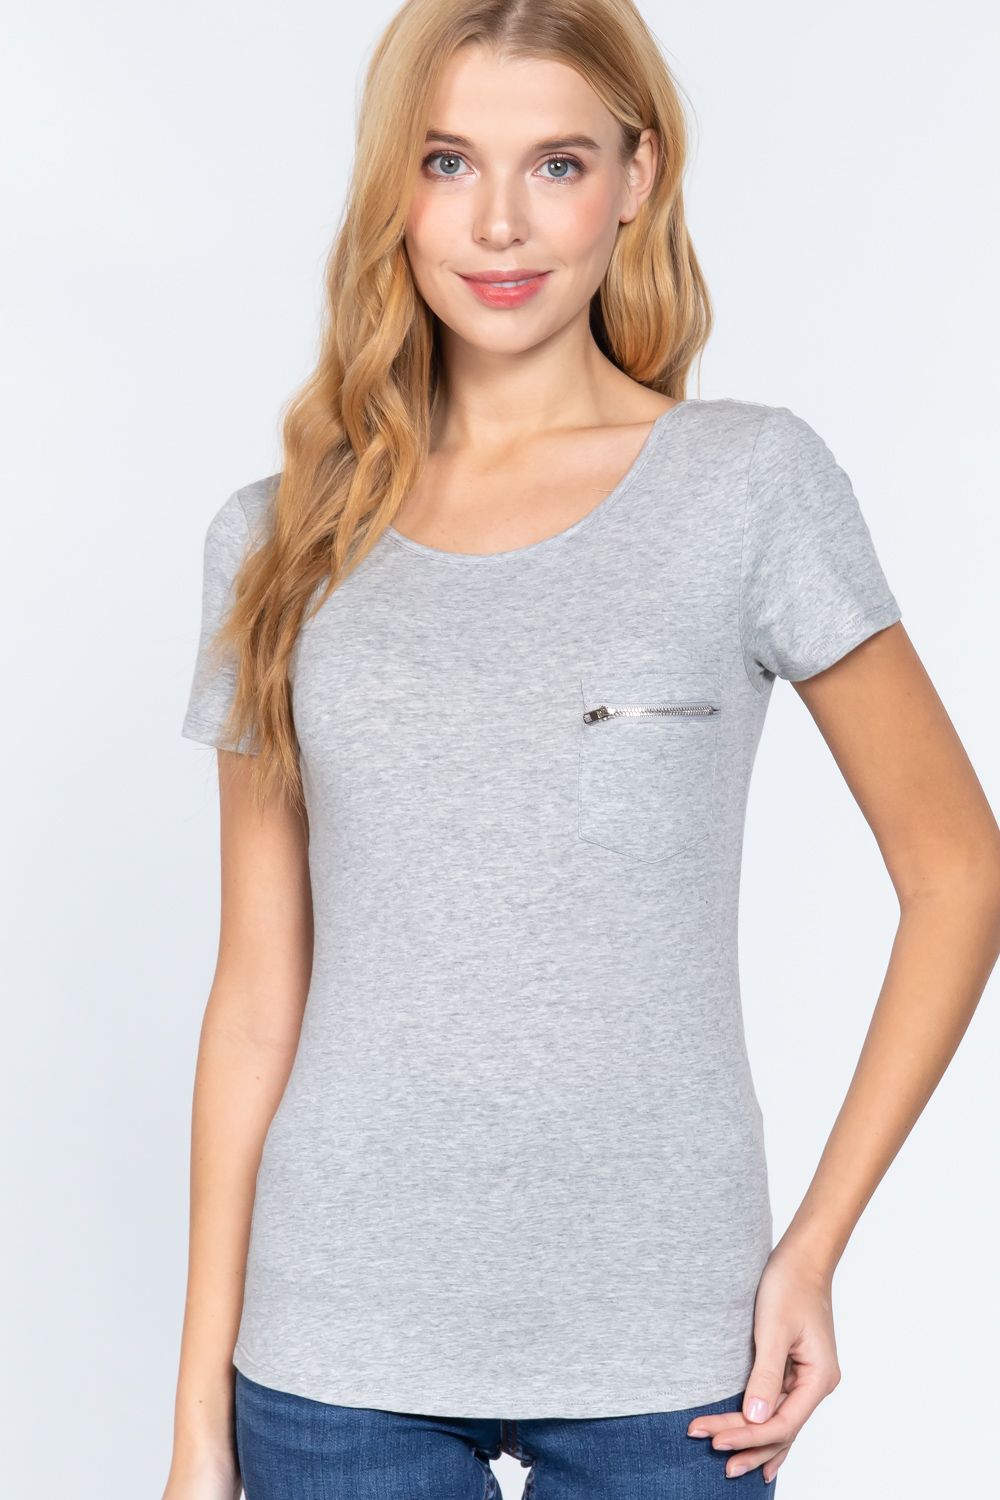 Grey Short Sleeve Top Zipper Women’s Shirt